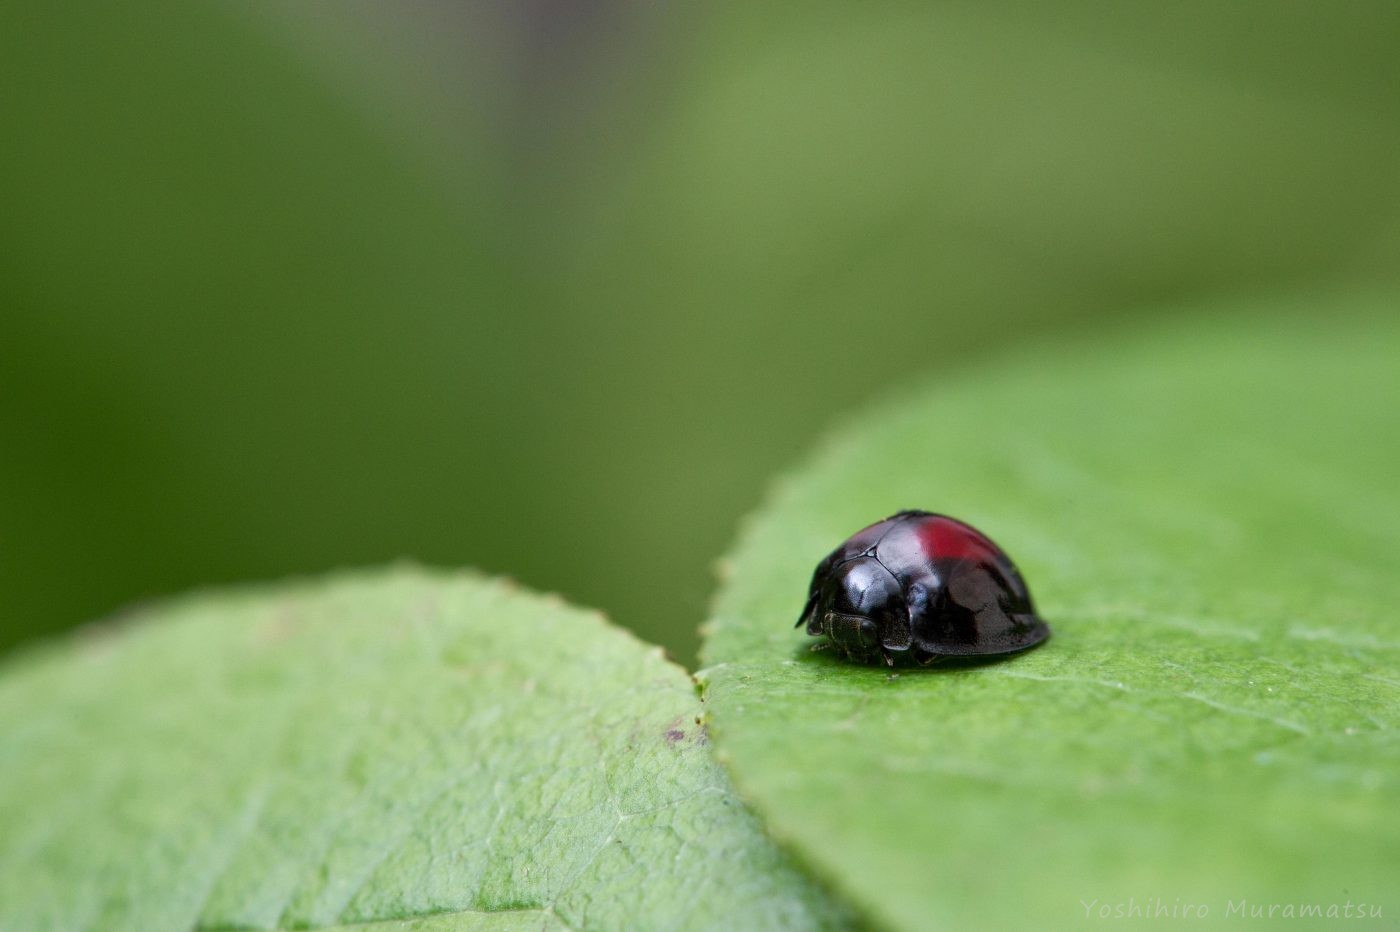 アカホシテントウ | 虫の写真と生態なら昆虫写真図鑑「ムシミル」